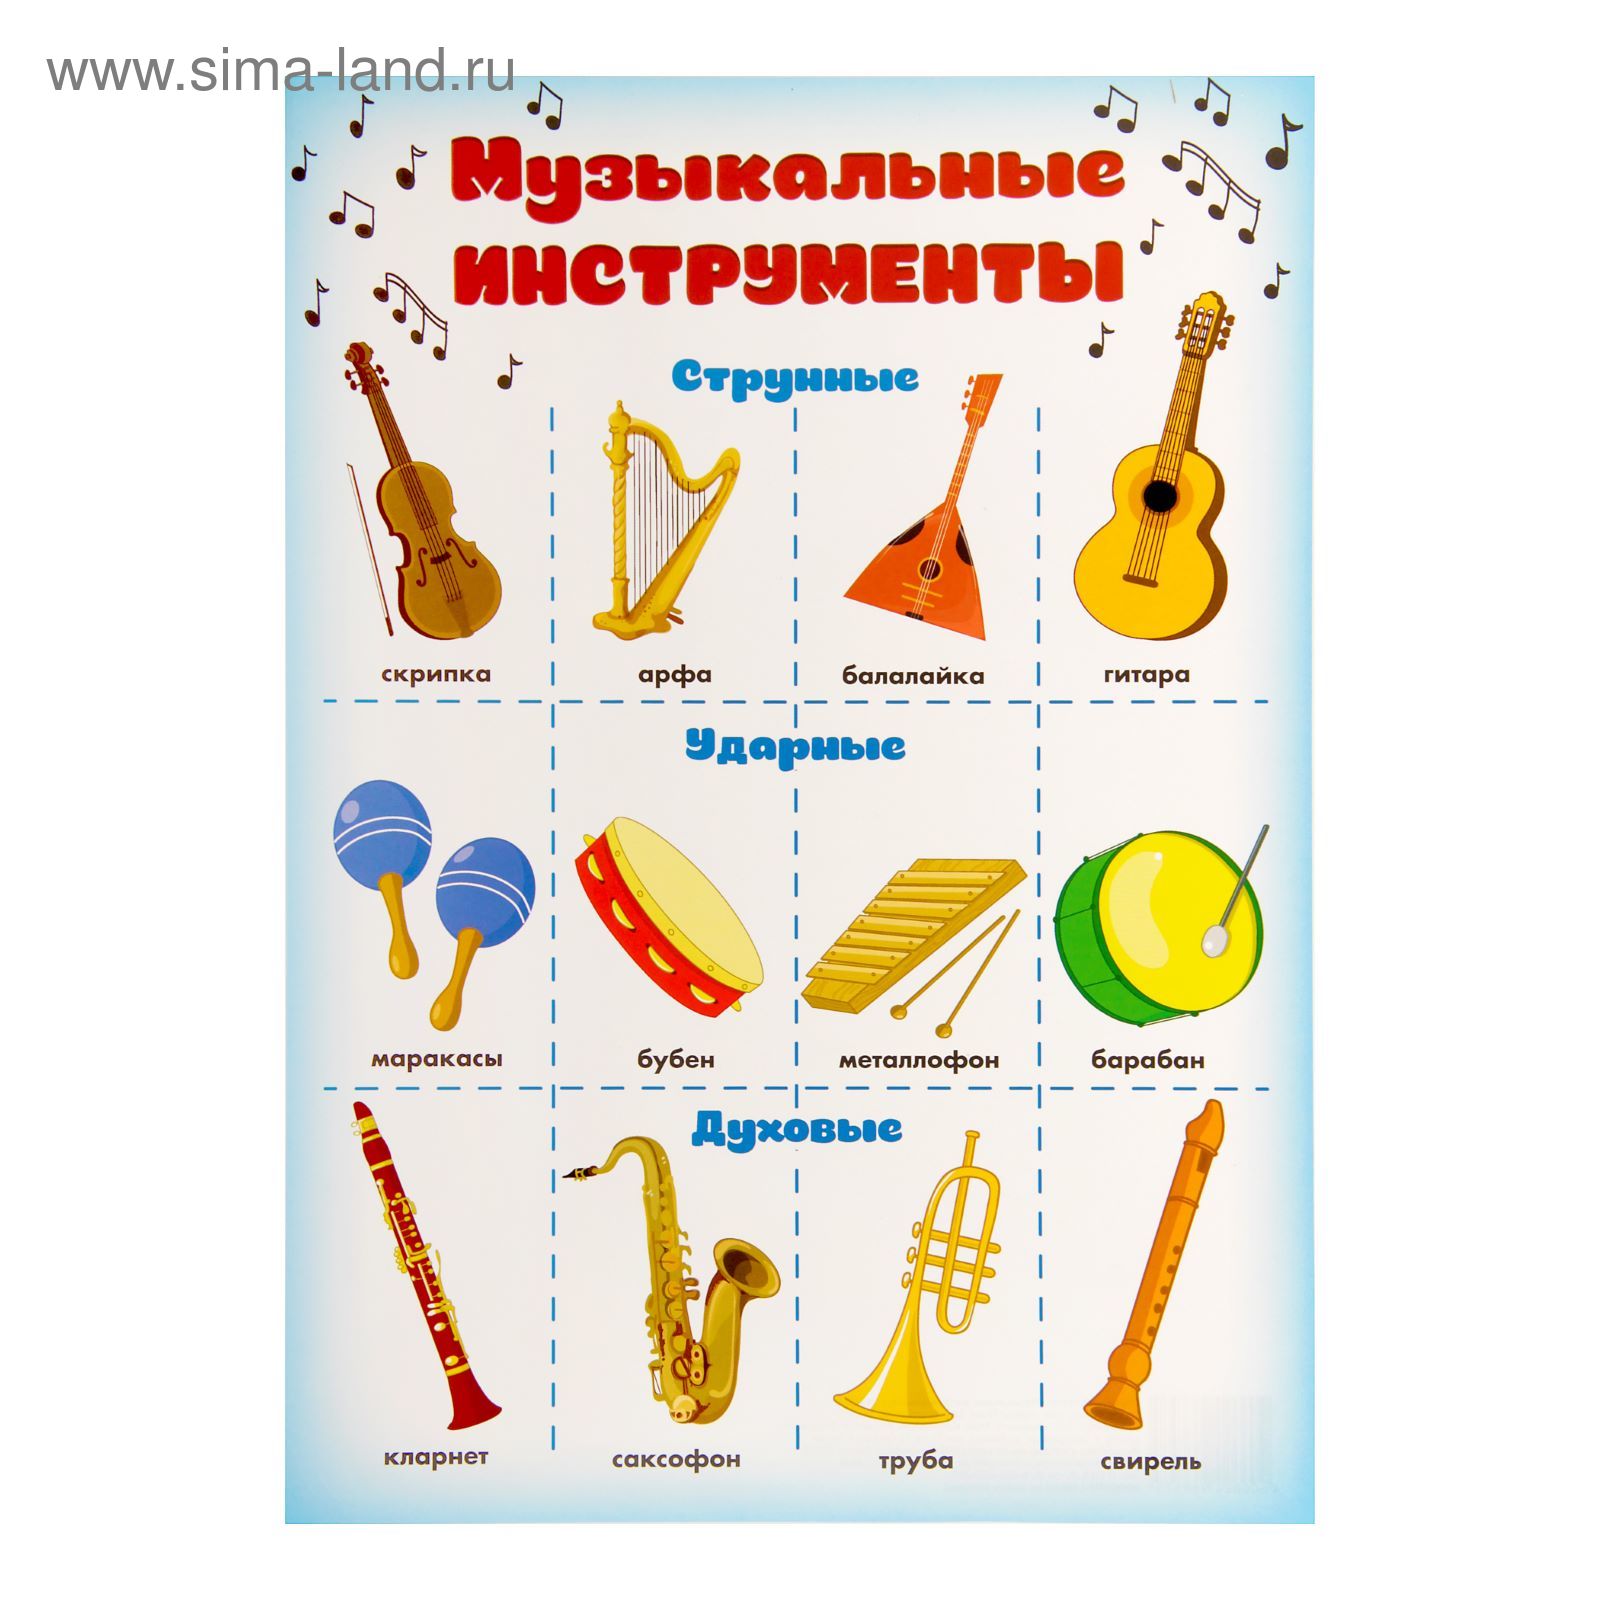 Обучающие музыкальные инструменты. Музыкальные инструменты. Плакат музыкальные инструменты. Музыкальные инструменты для дошкольников. Детские музыкальные инструменты с названиями.